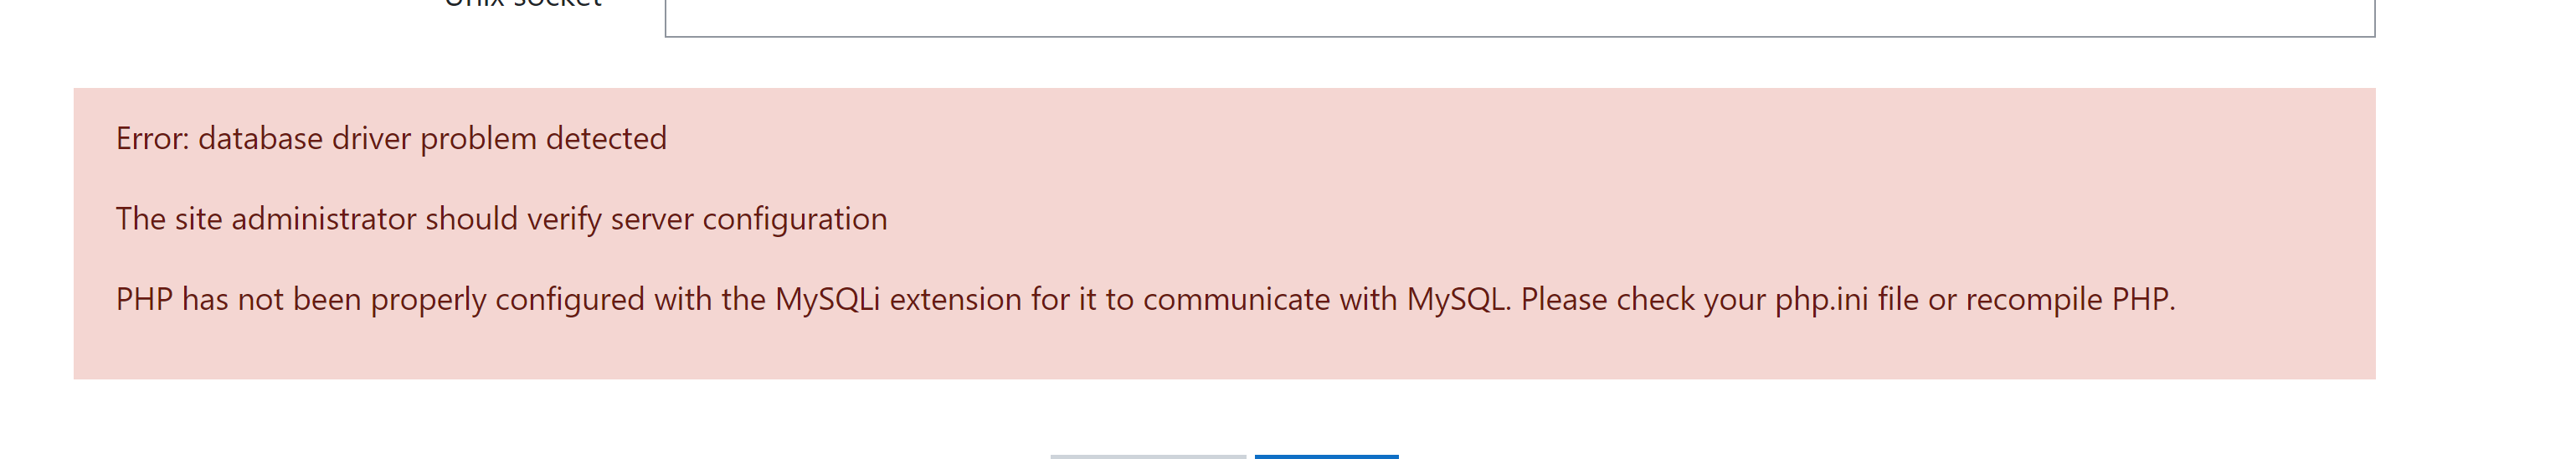 error database driver problem detected mssql